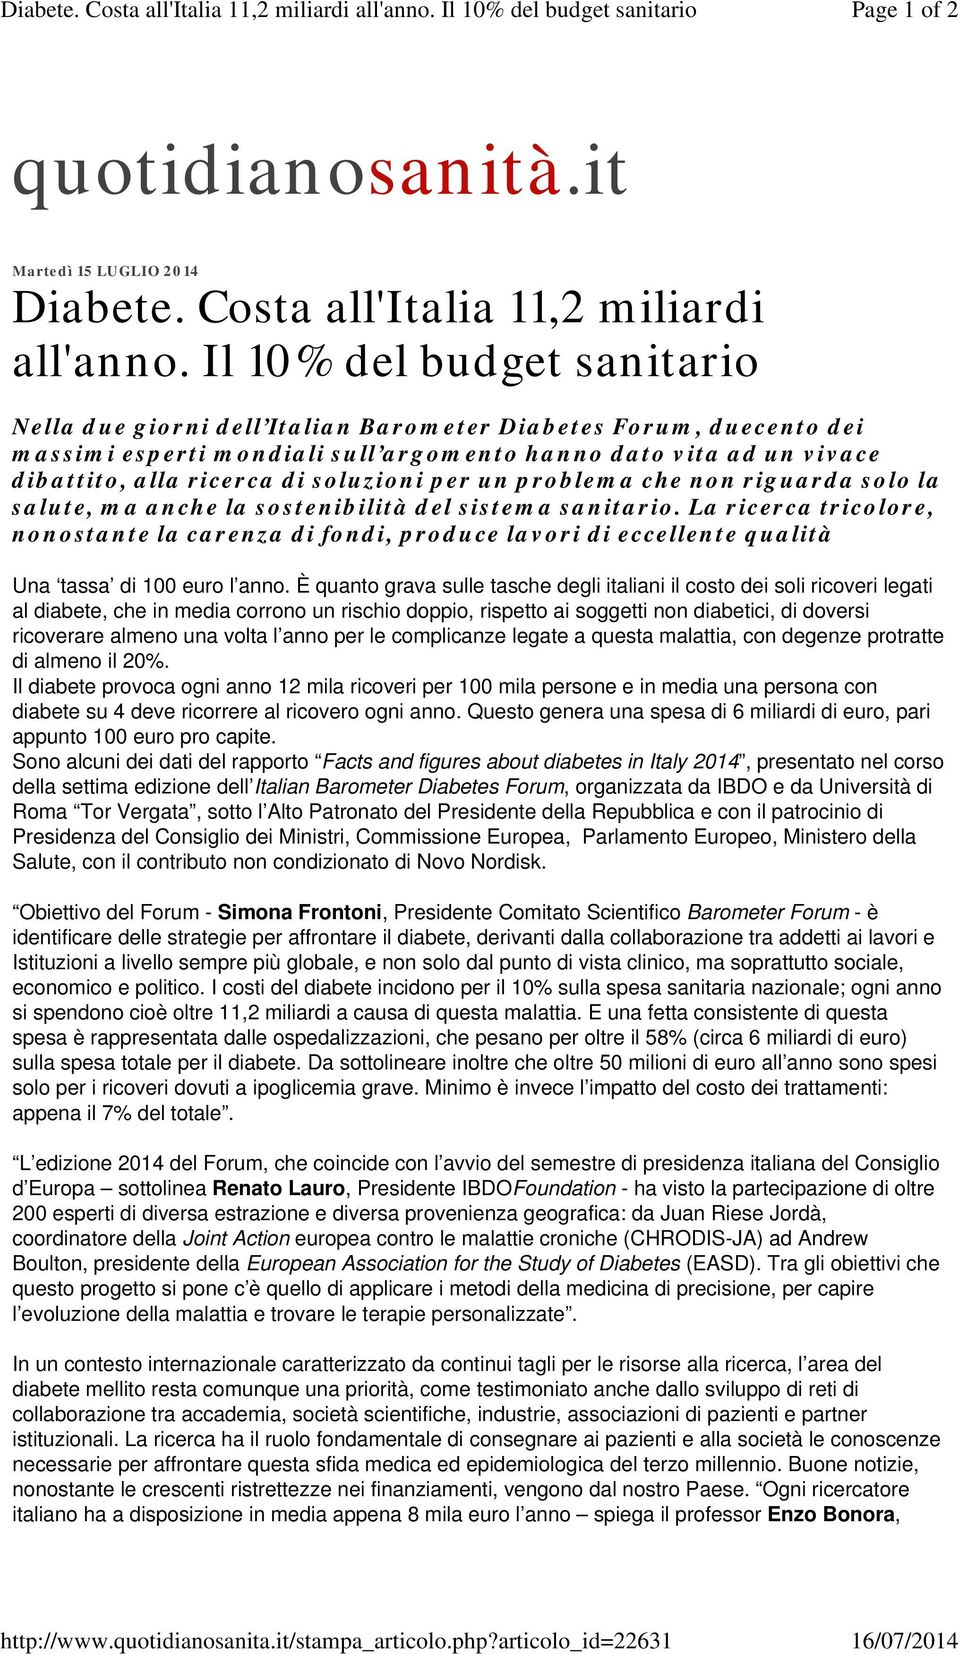 Il 10% del budget sanitario Nella due giorni dell Italian Barometer Diabetes Forum, duecento dei massimi esperti mondiali sull argomento hanno dato vita ad un vivace dibattito, alla ricerca di